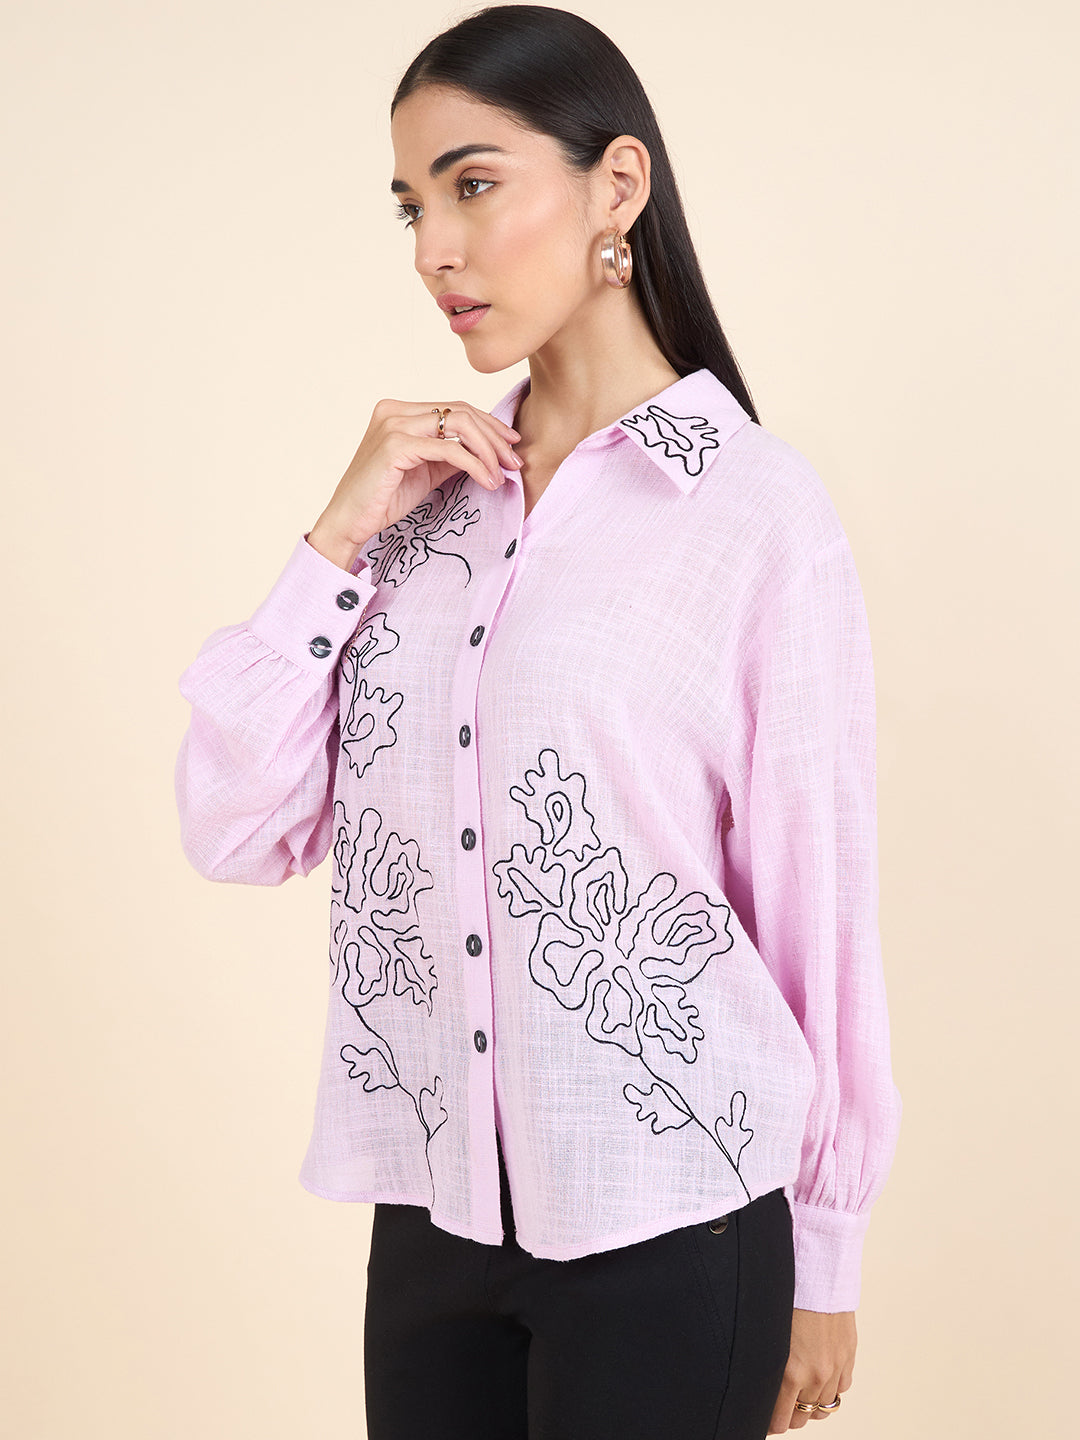 Gipsy Stylish Women Shirts Collection Pastel Pink